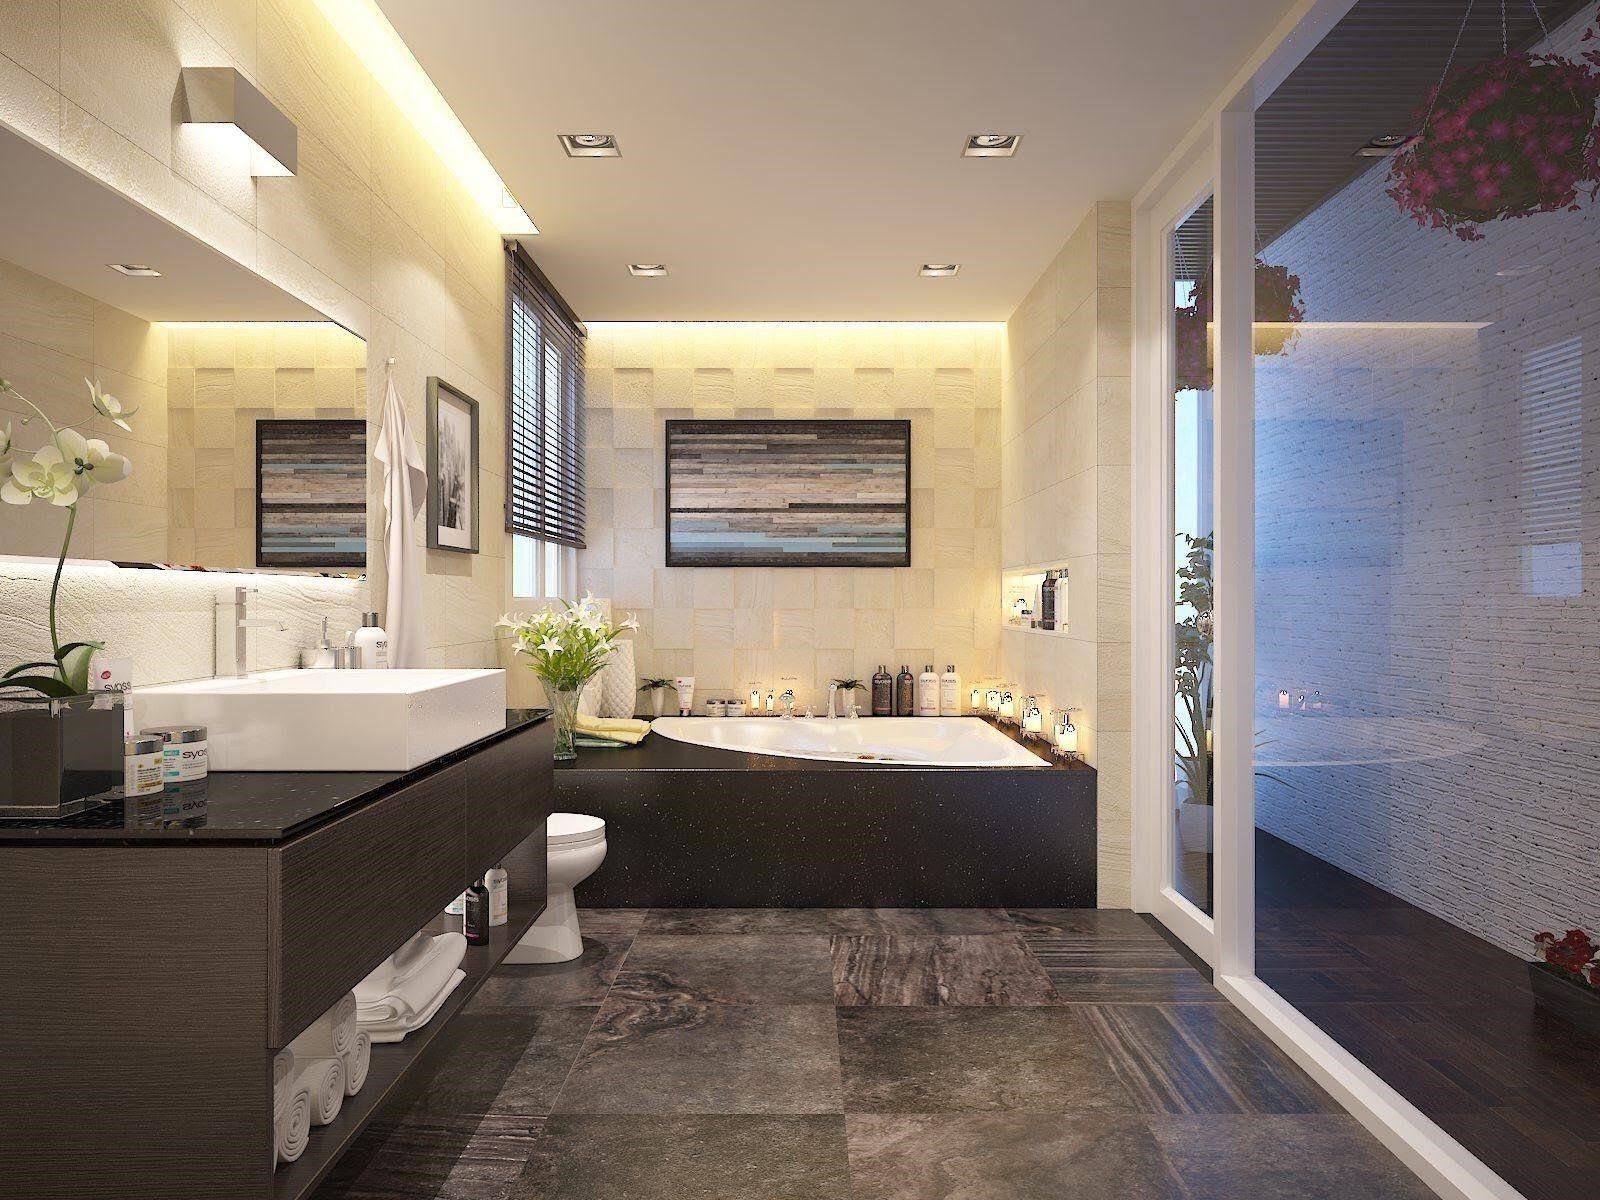 Thiết kế nội thất hiện đại cho phòng tắm như thế nào?